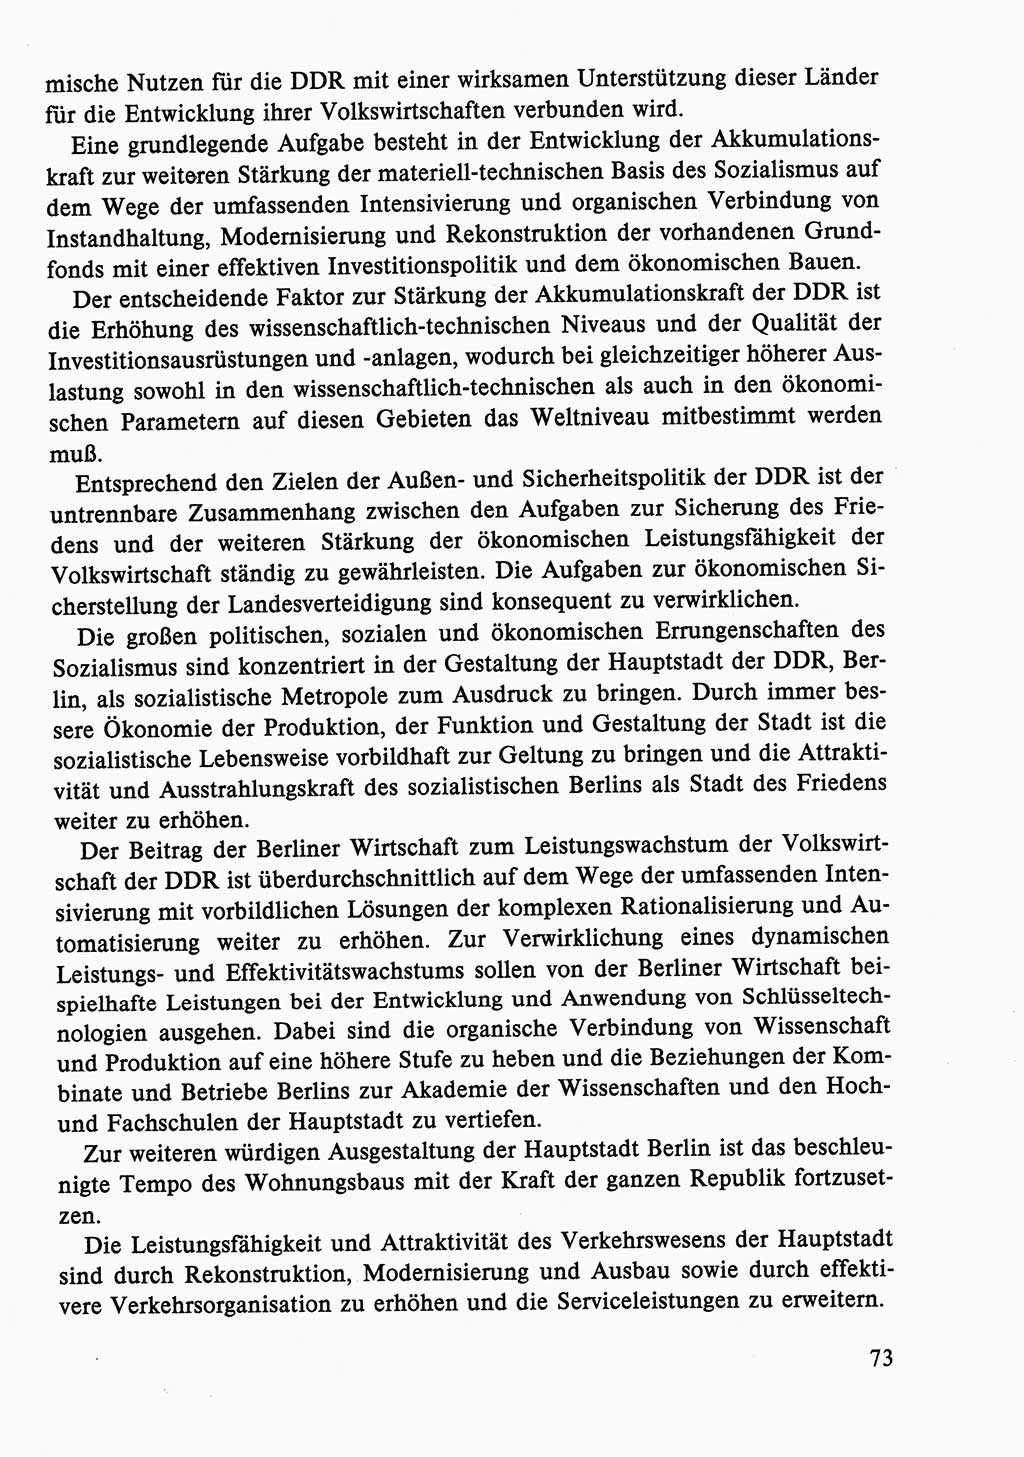 Dokumente der Sozialistischen Einheitspartei Deutschlands (SED) [Deutsche Demokratische Republik (DDR)] 1986-1987, Seite 73 (Dok. SED DDR 1986-1987, S. 73)